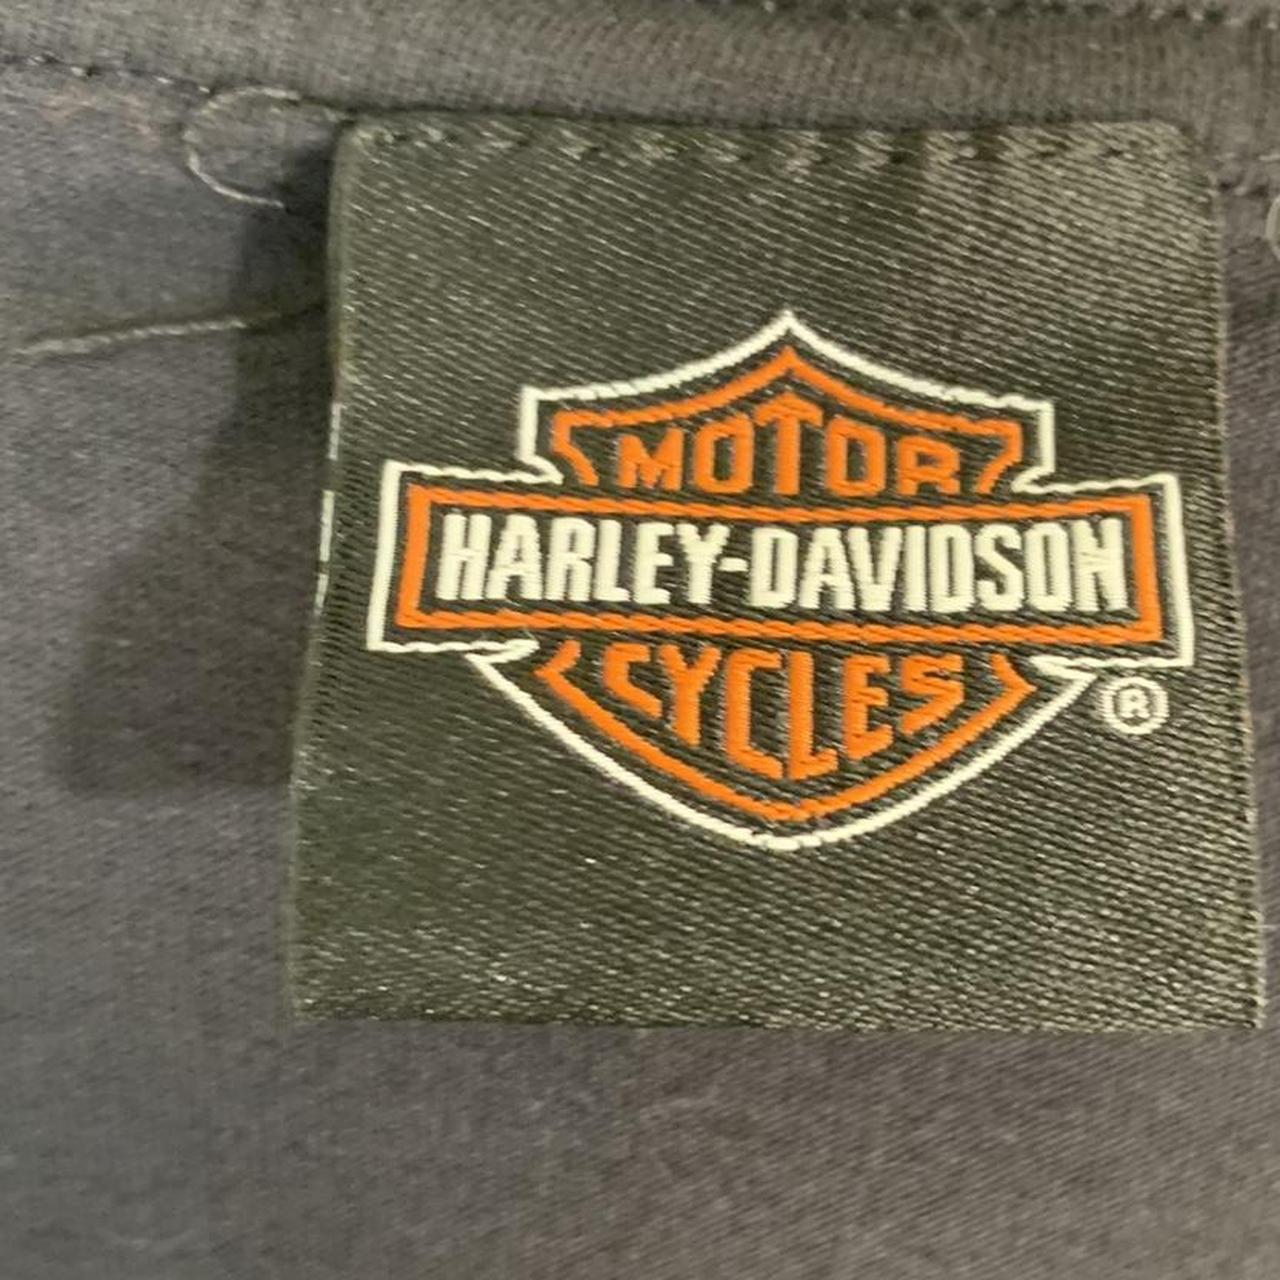 Harley Davidson girls Double-sided cool Details Nice... - Depop